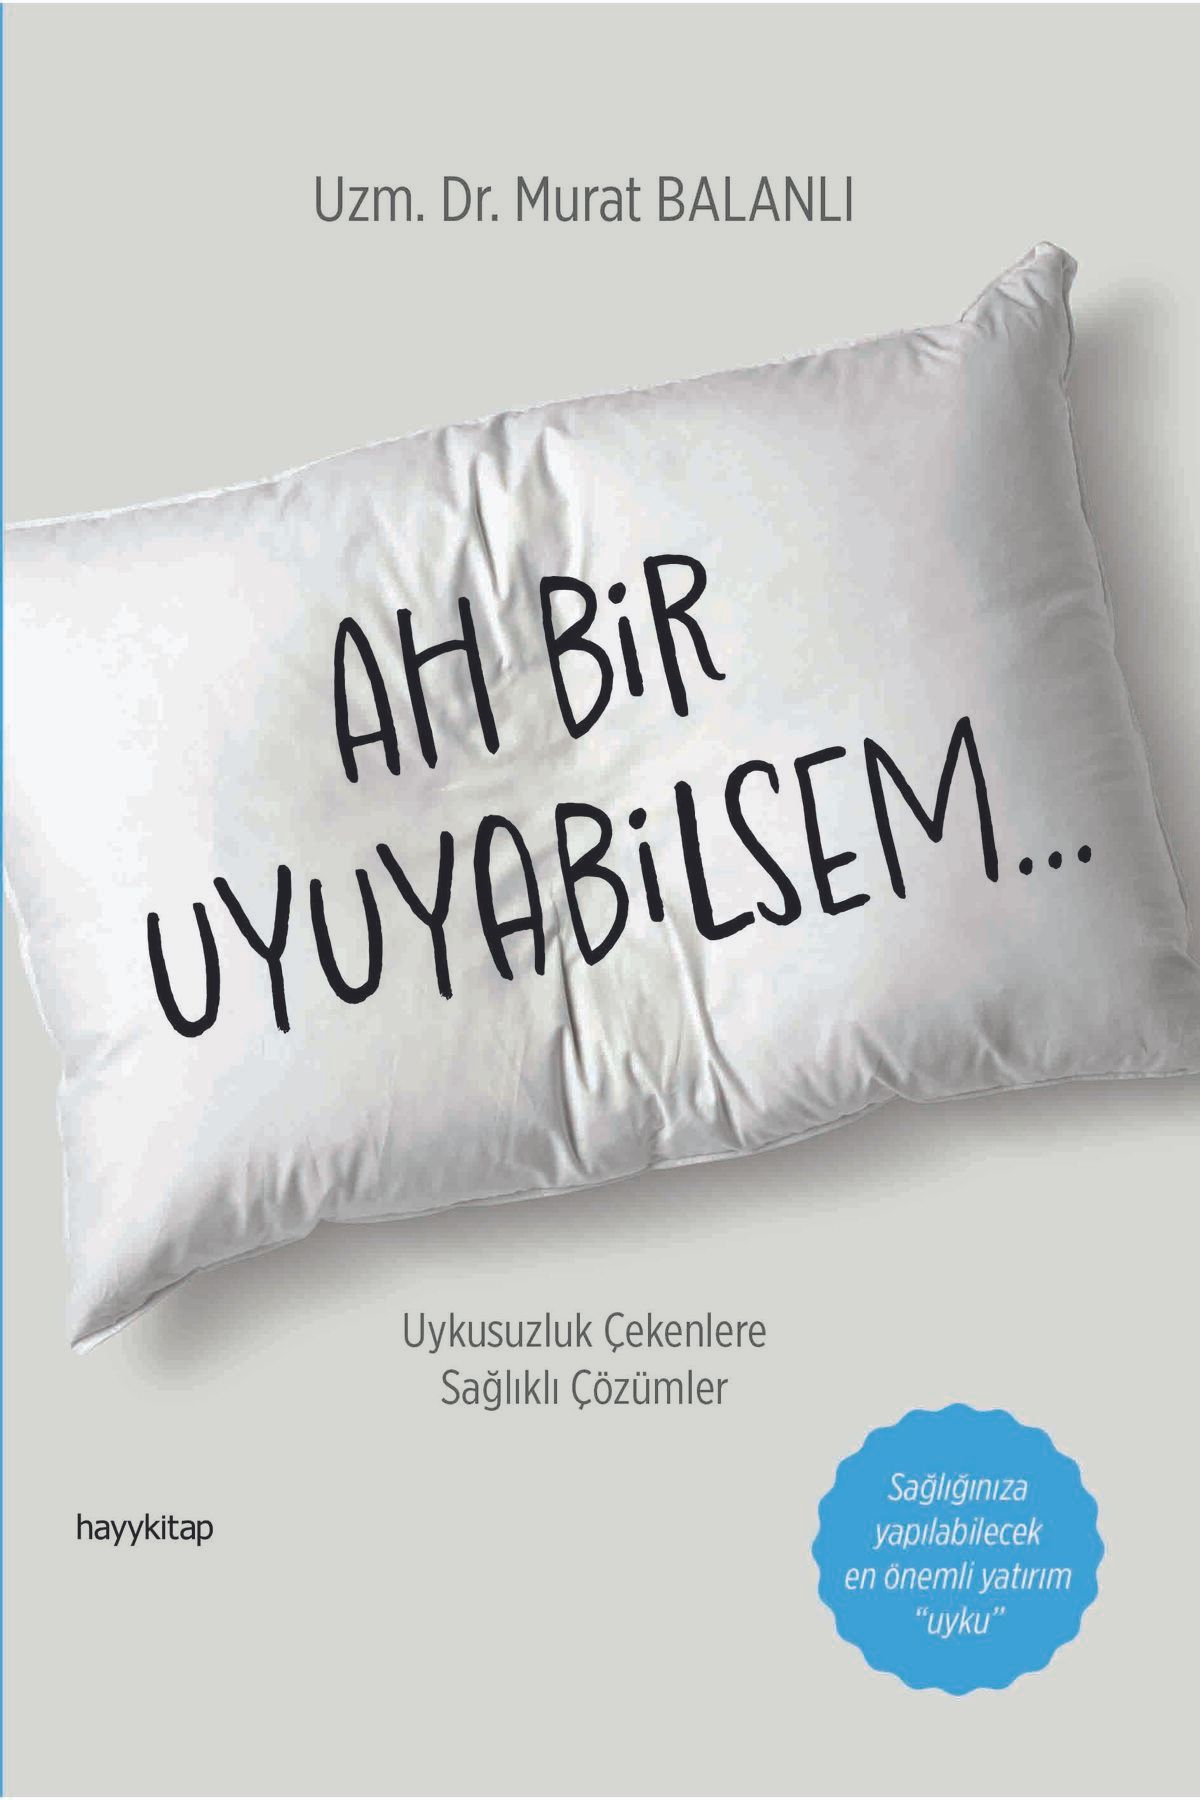 Hayykitap AH BİR UYUYABİLSEM / Uzm. Dr. Murat Balanlı